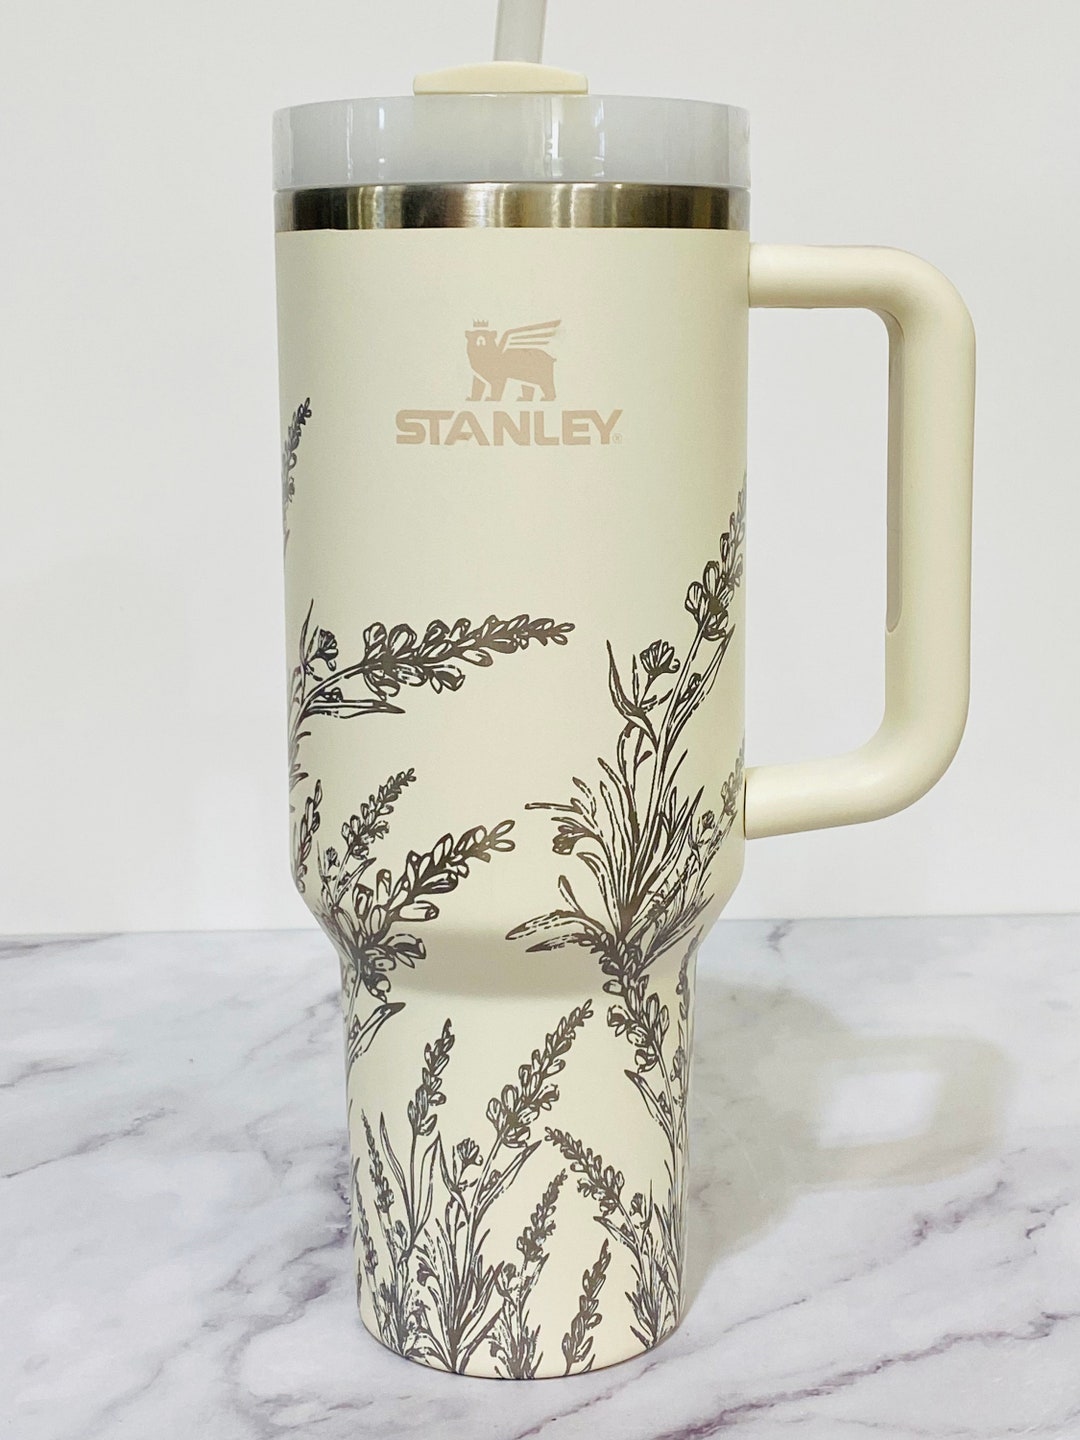 Vaso Bling Stanley - bling de plata - pedrería premium deslumbrante taza de  40 oz con asa - taza difícil de encontrar - taza stanley